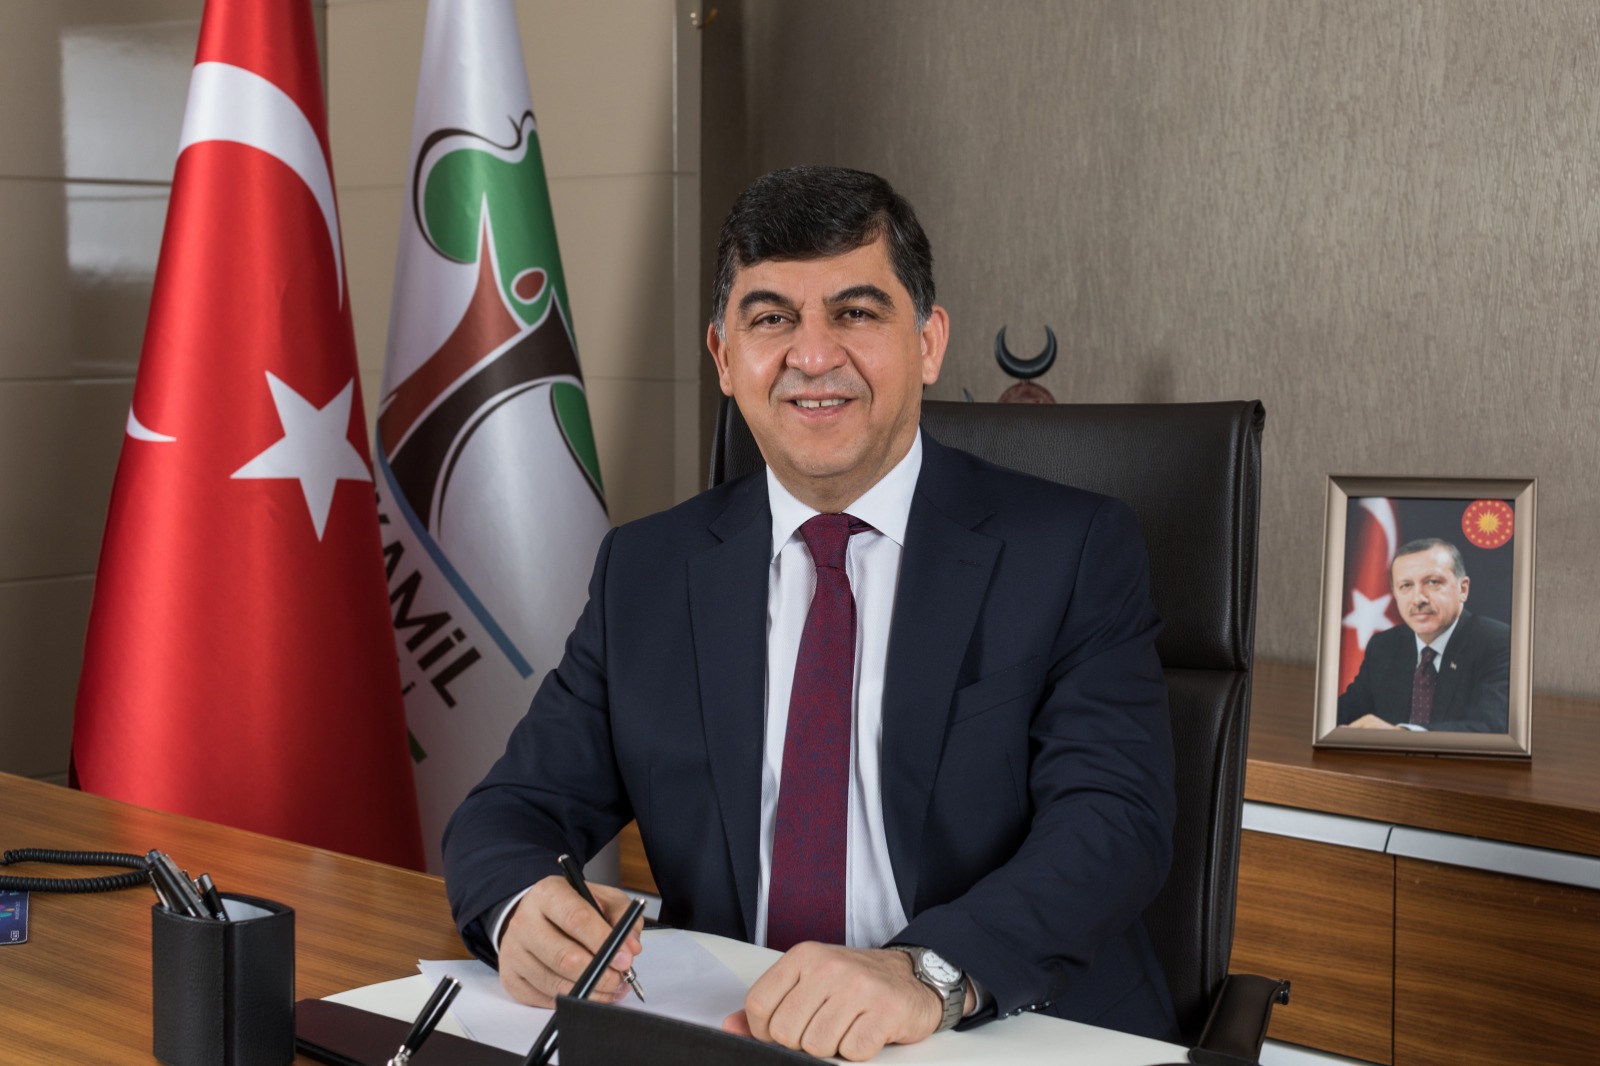 Photo of Şehitkamil Belediye Başkanı Fadıloğlu: ” 30 Ağustos Dünya tarihinin gördüğü en büyük kahramanlık”